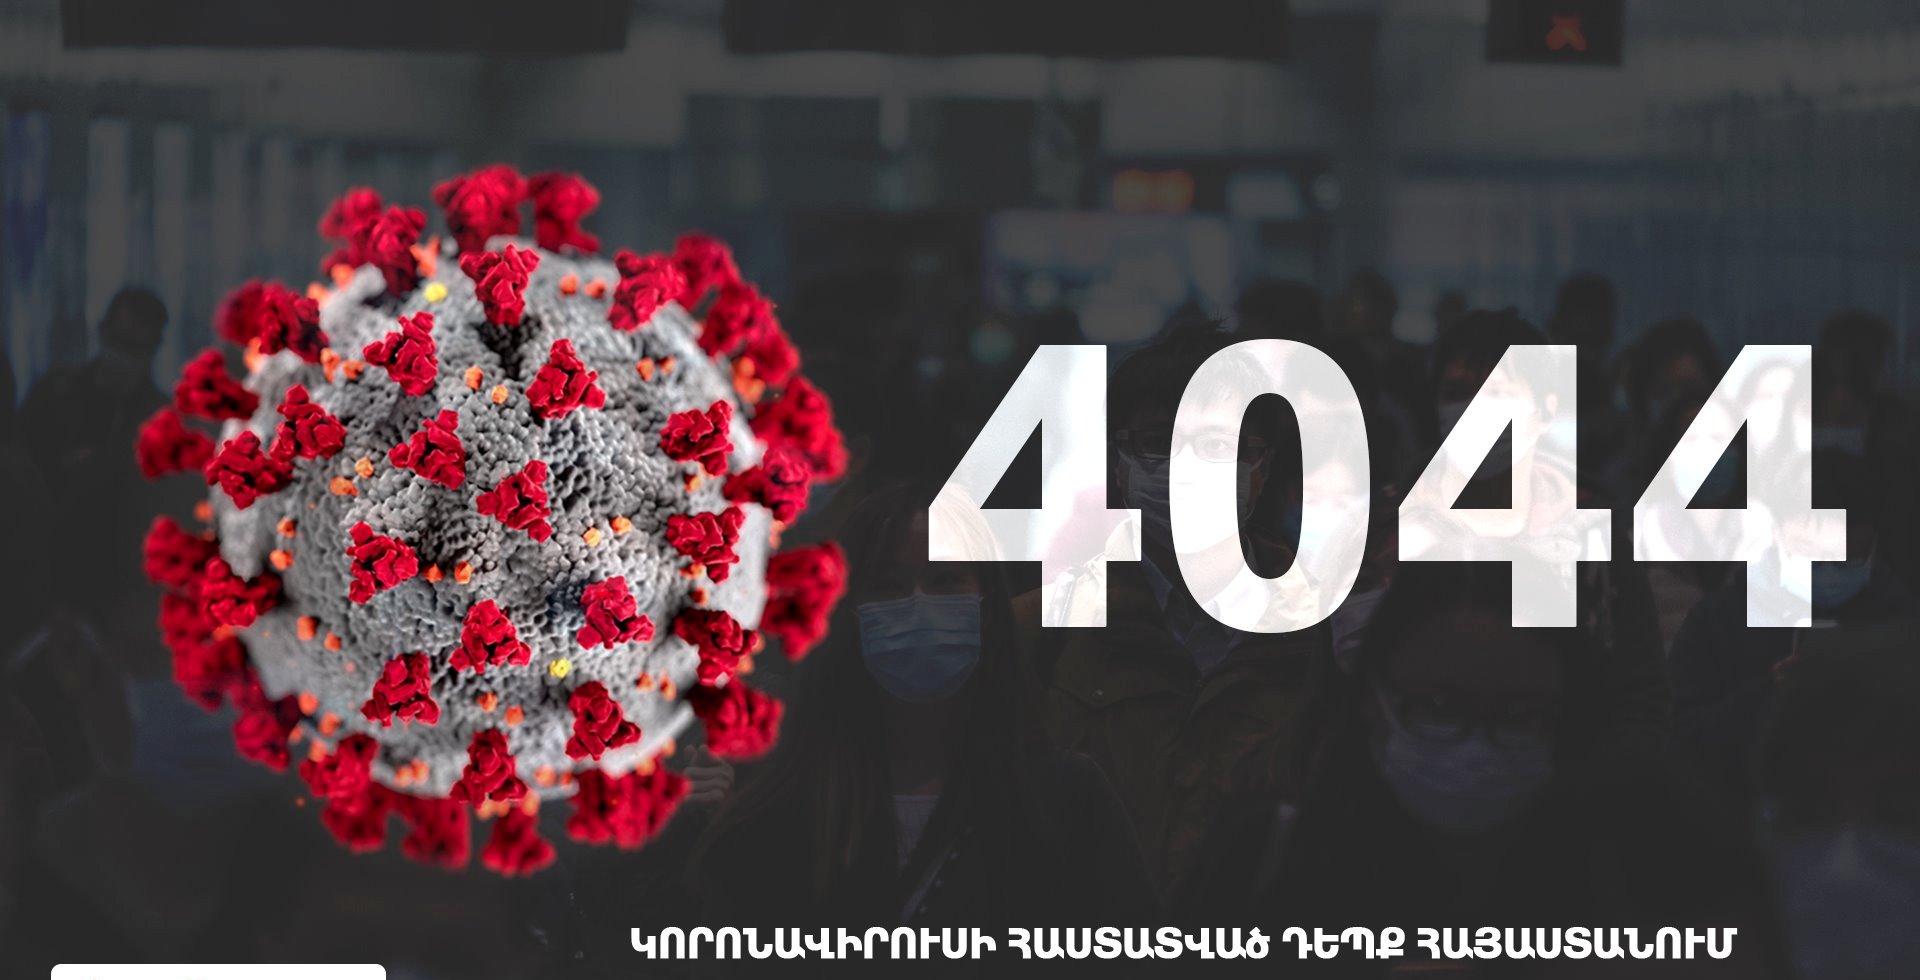 Ermenistan'da koronavirüs vaka sayısı 4.044'e ulaştı